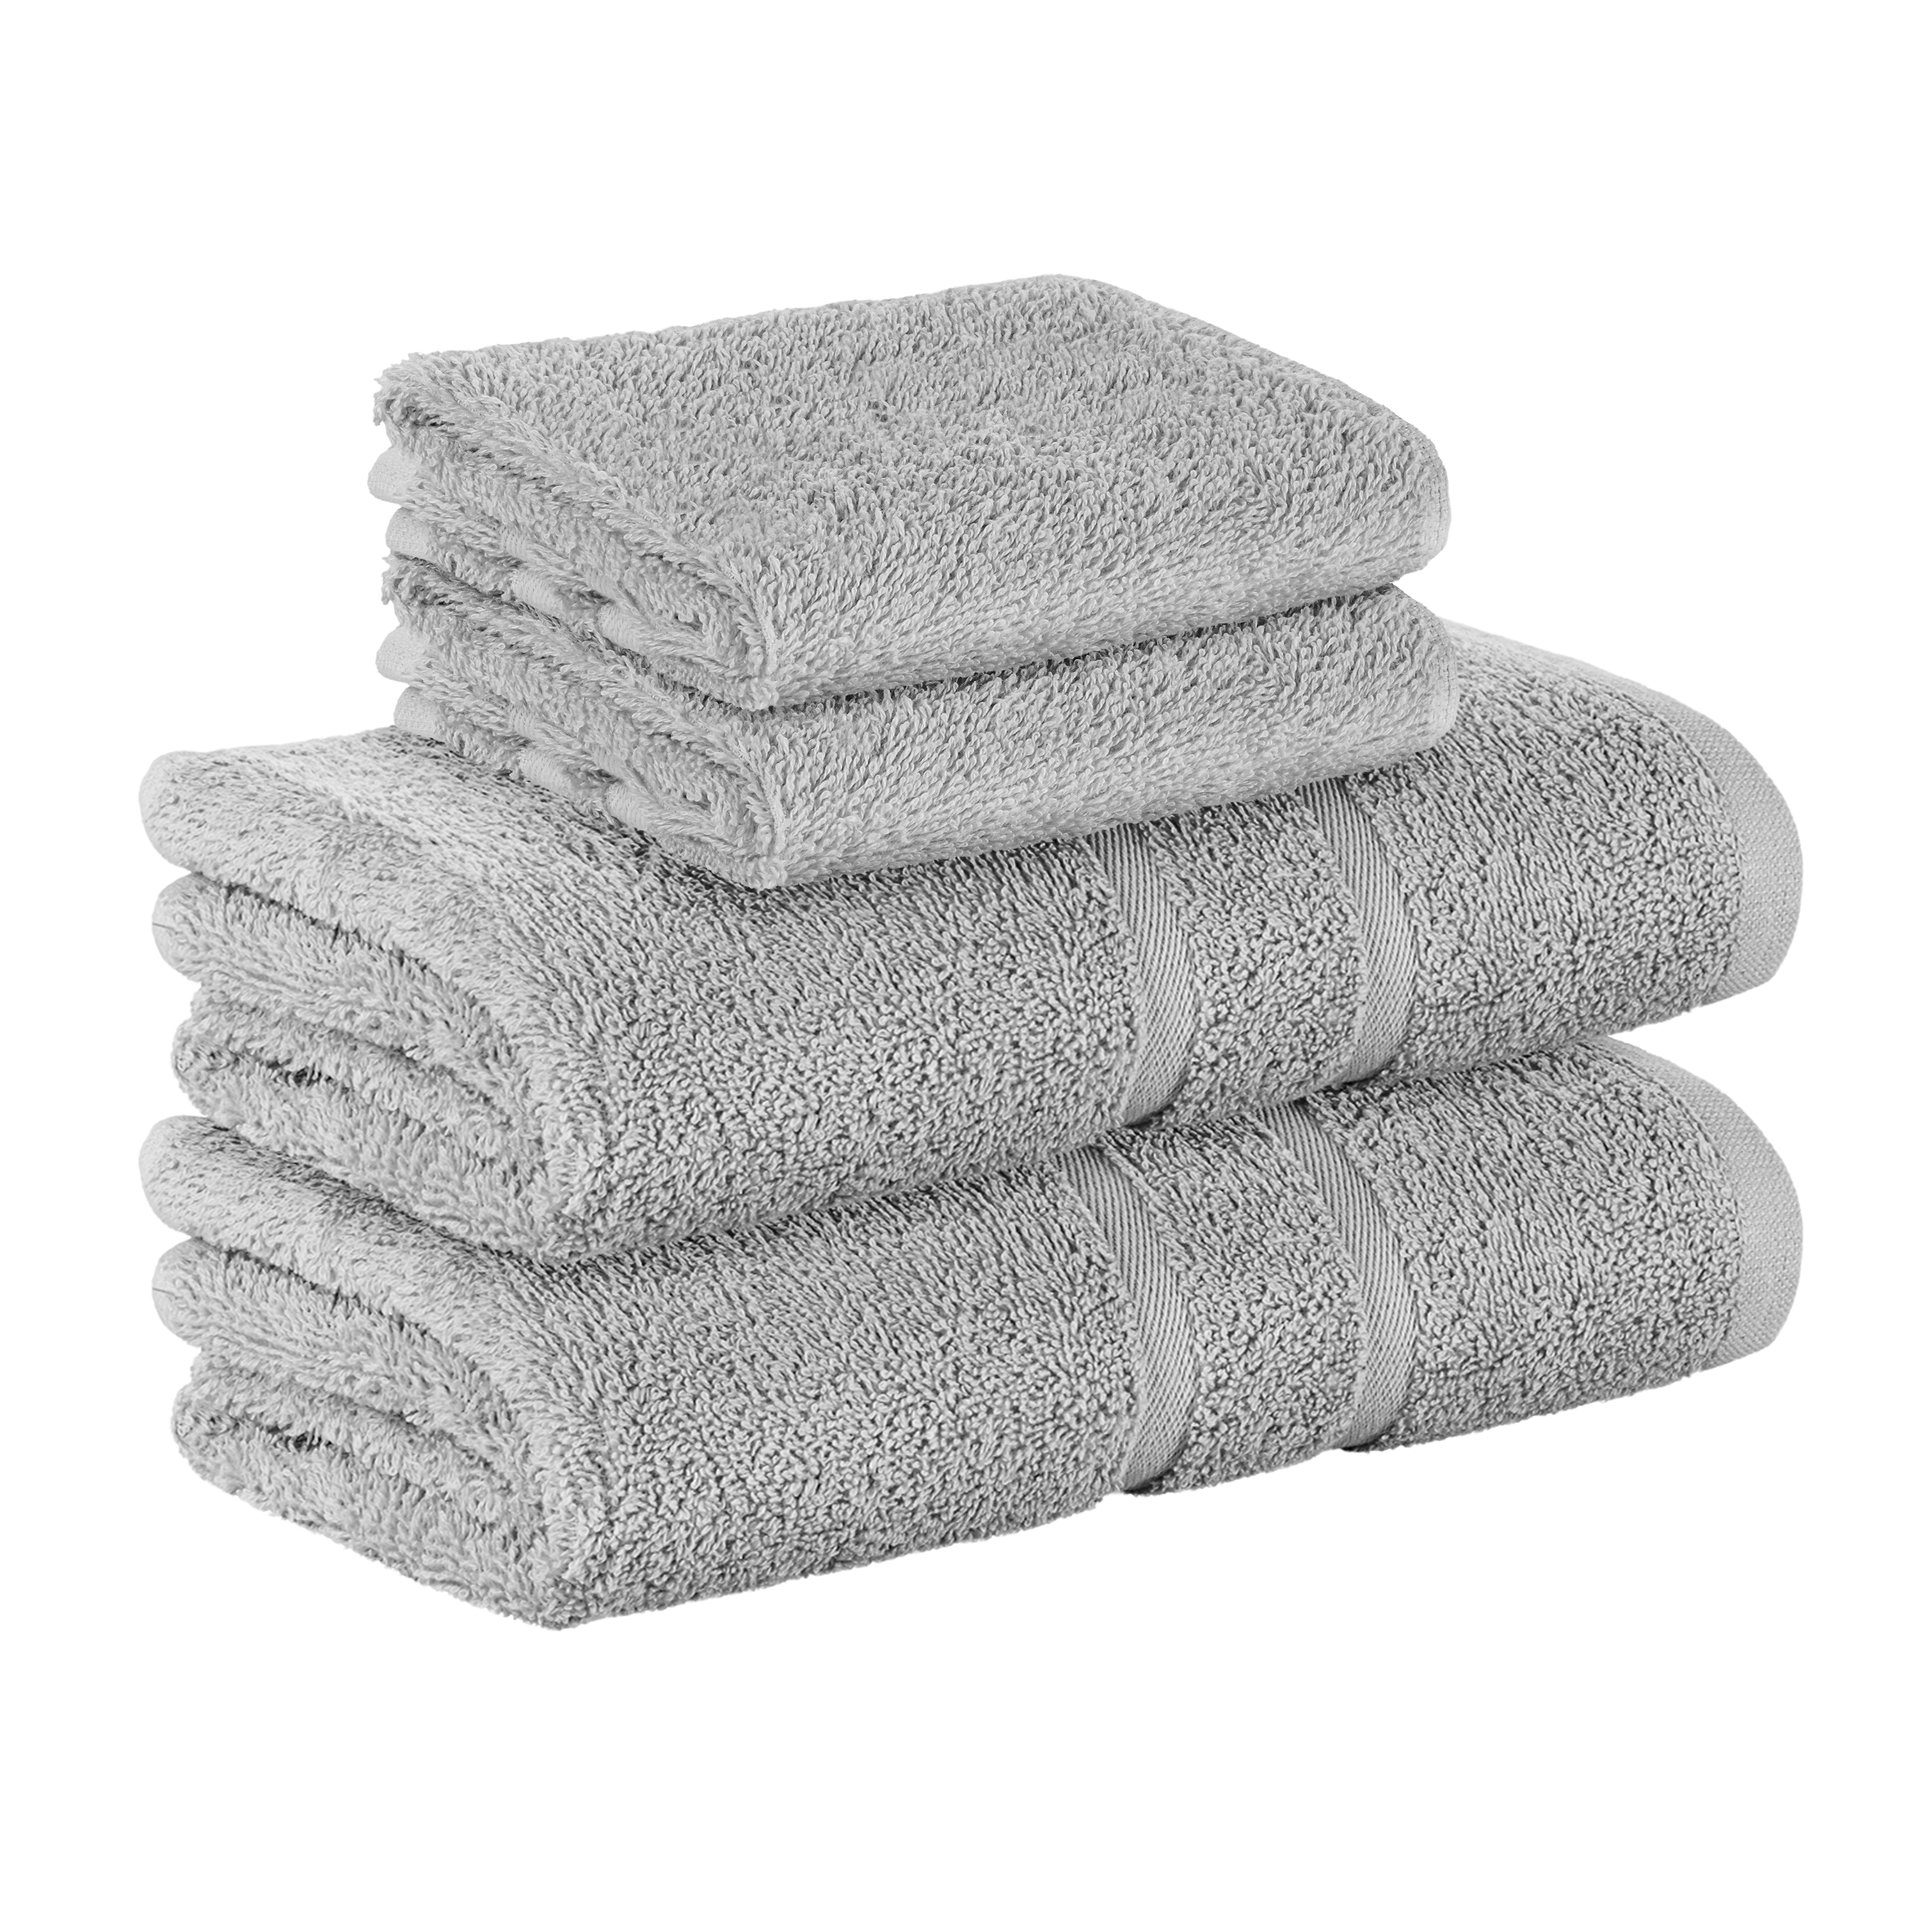 StickandShine Handtuch 2x Gästehandtuch 2x Handtücher als SET in verschiedenen Farben (4 Teilig) 100% Baumwolle 500 GSM Frottee 4er Handtuch Pack, 100% Baumwolle 500GSM Hellgrau